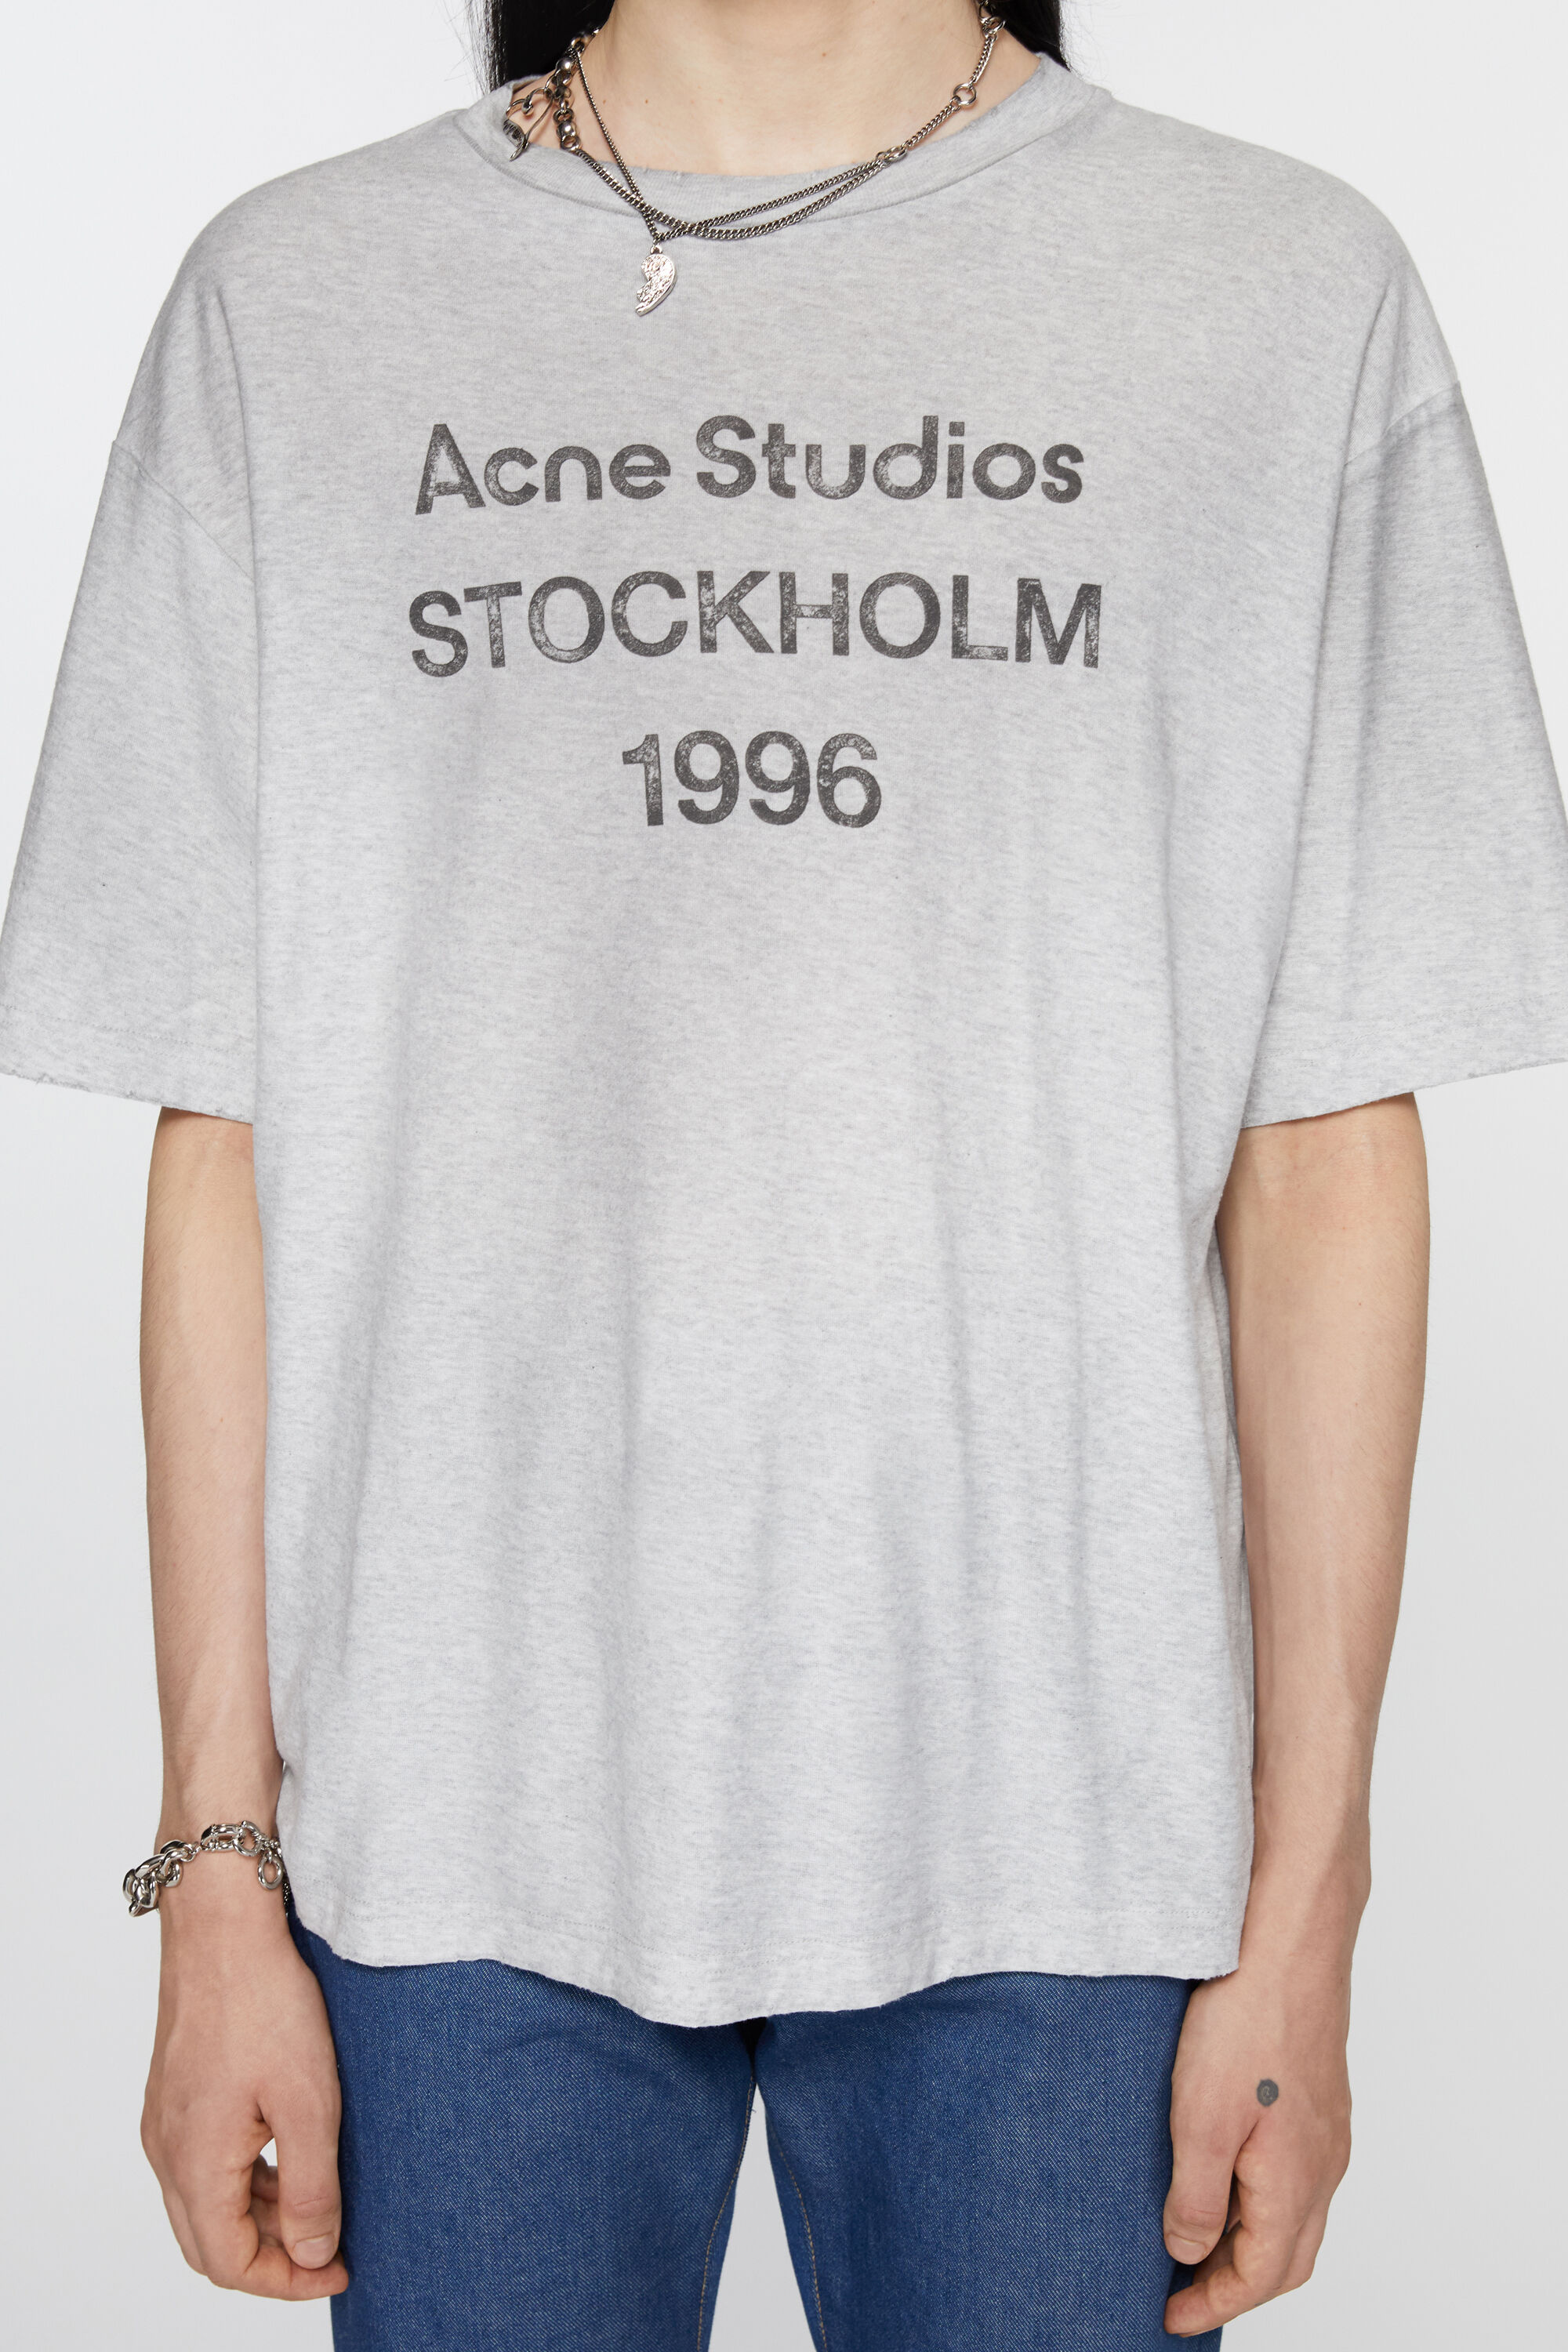 Acne Studios 1996 Tシャツグレー オーバーサイズグレー